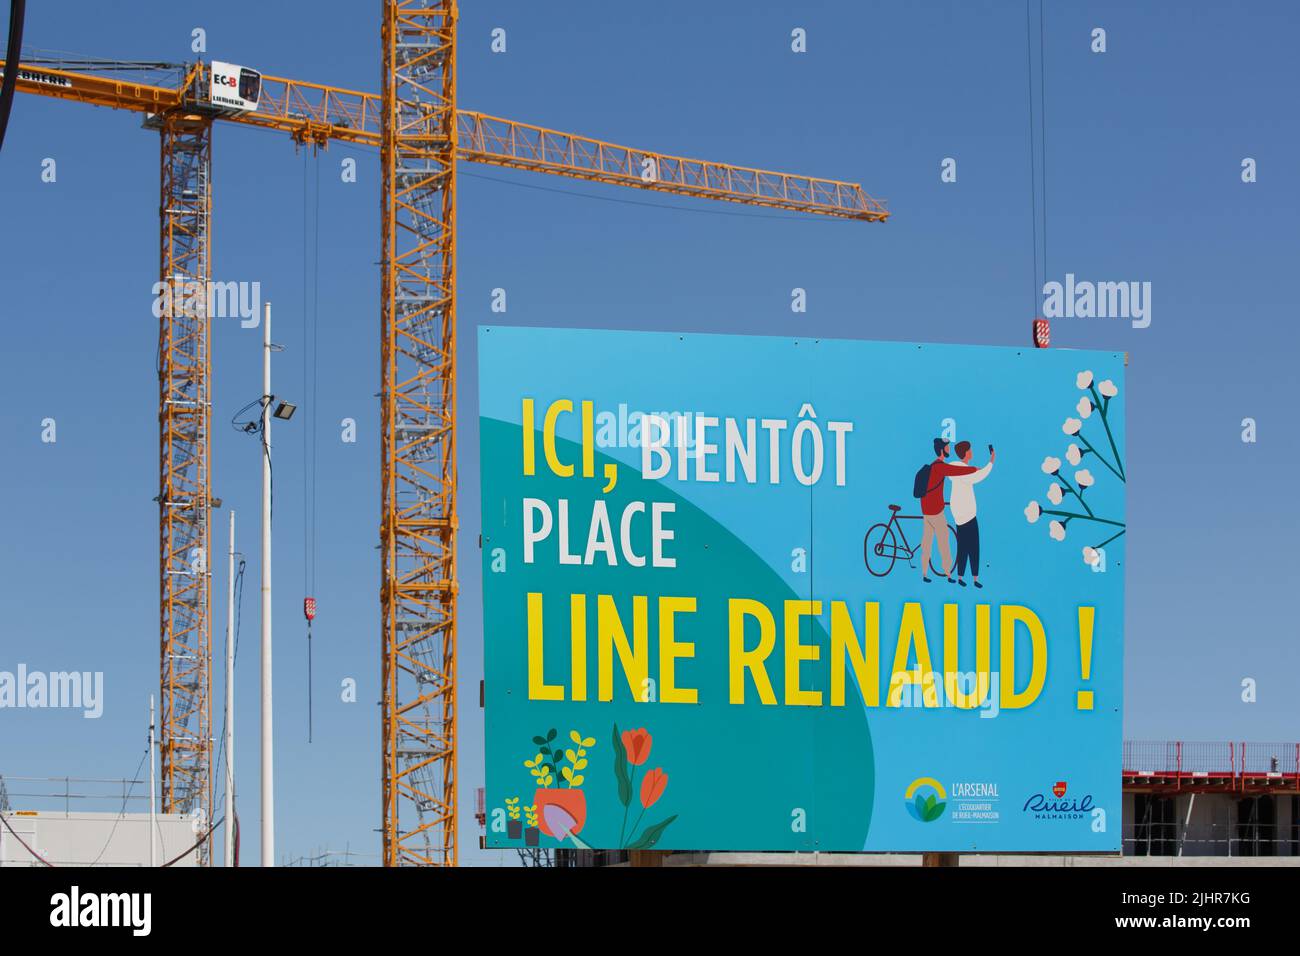 France, Ile de France region, Hauts de France, Rueil-Malmaison, Jacques Chirac park, construction cranes around the future Line Renaud square Stock Photo